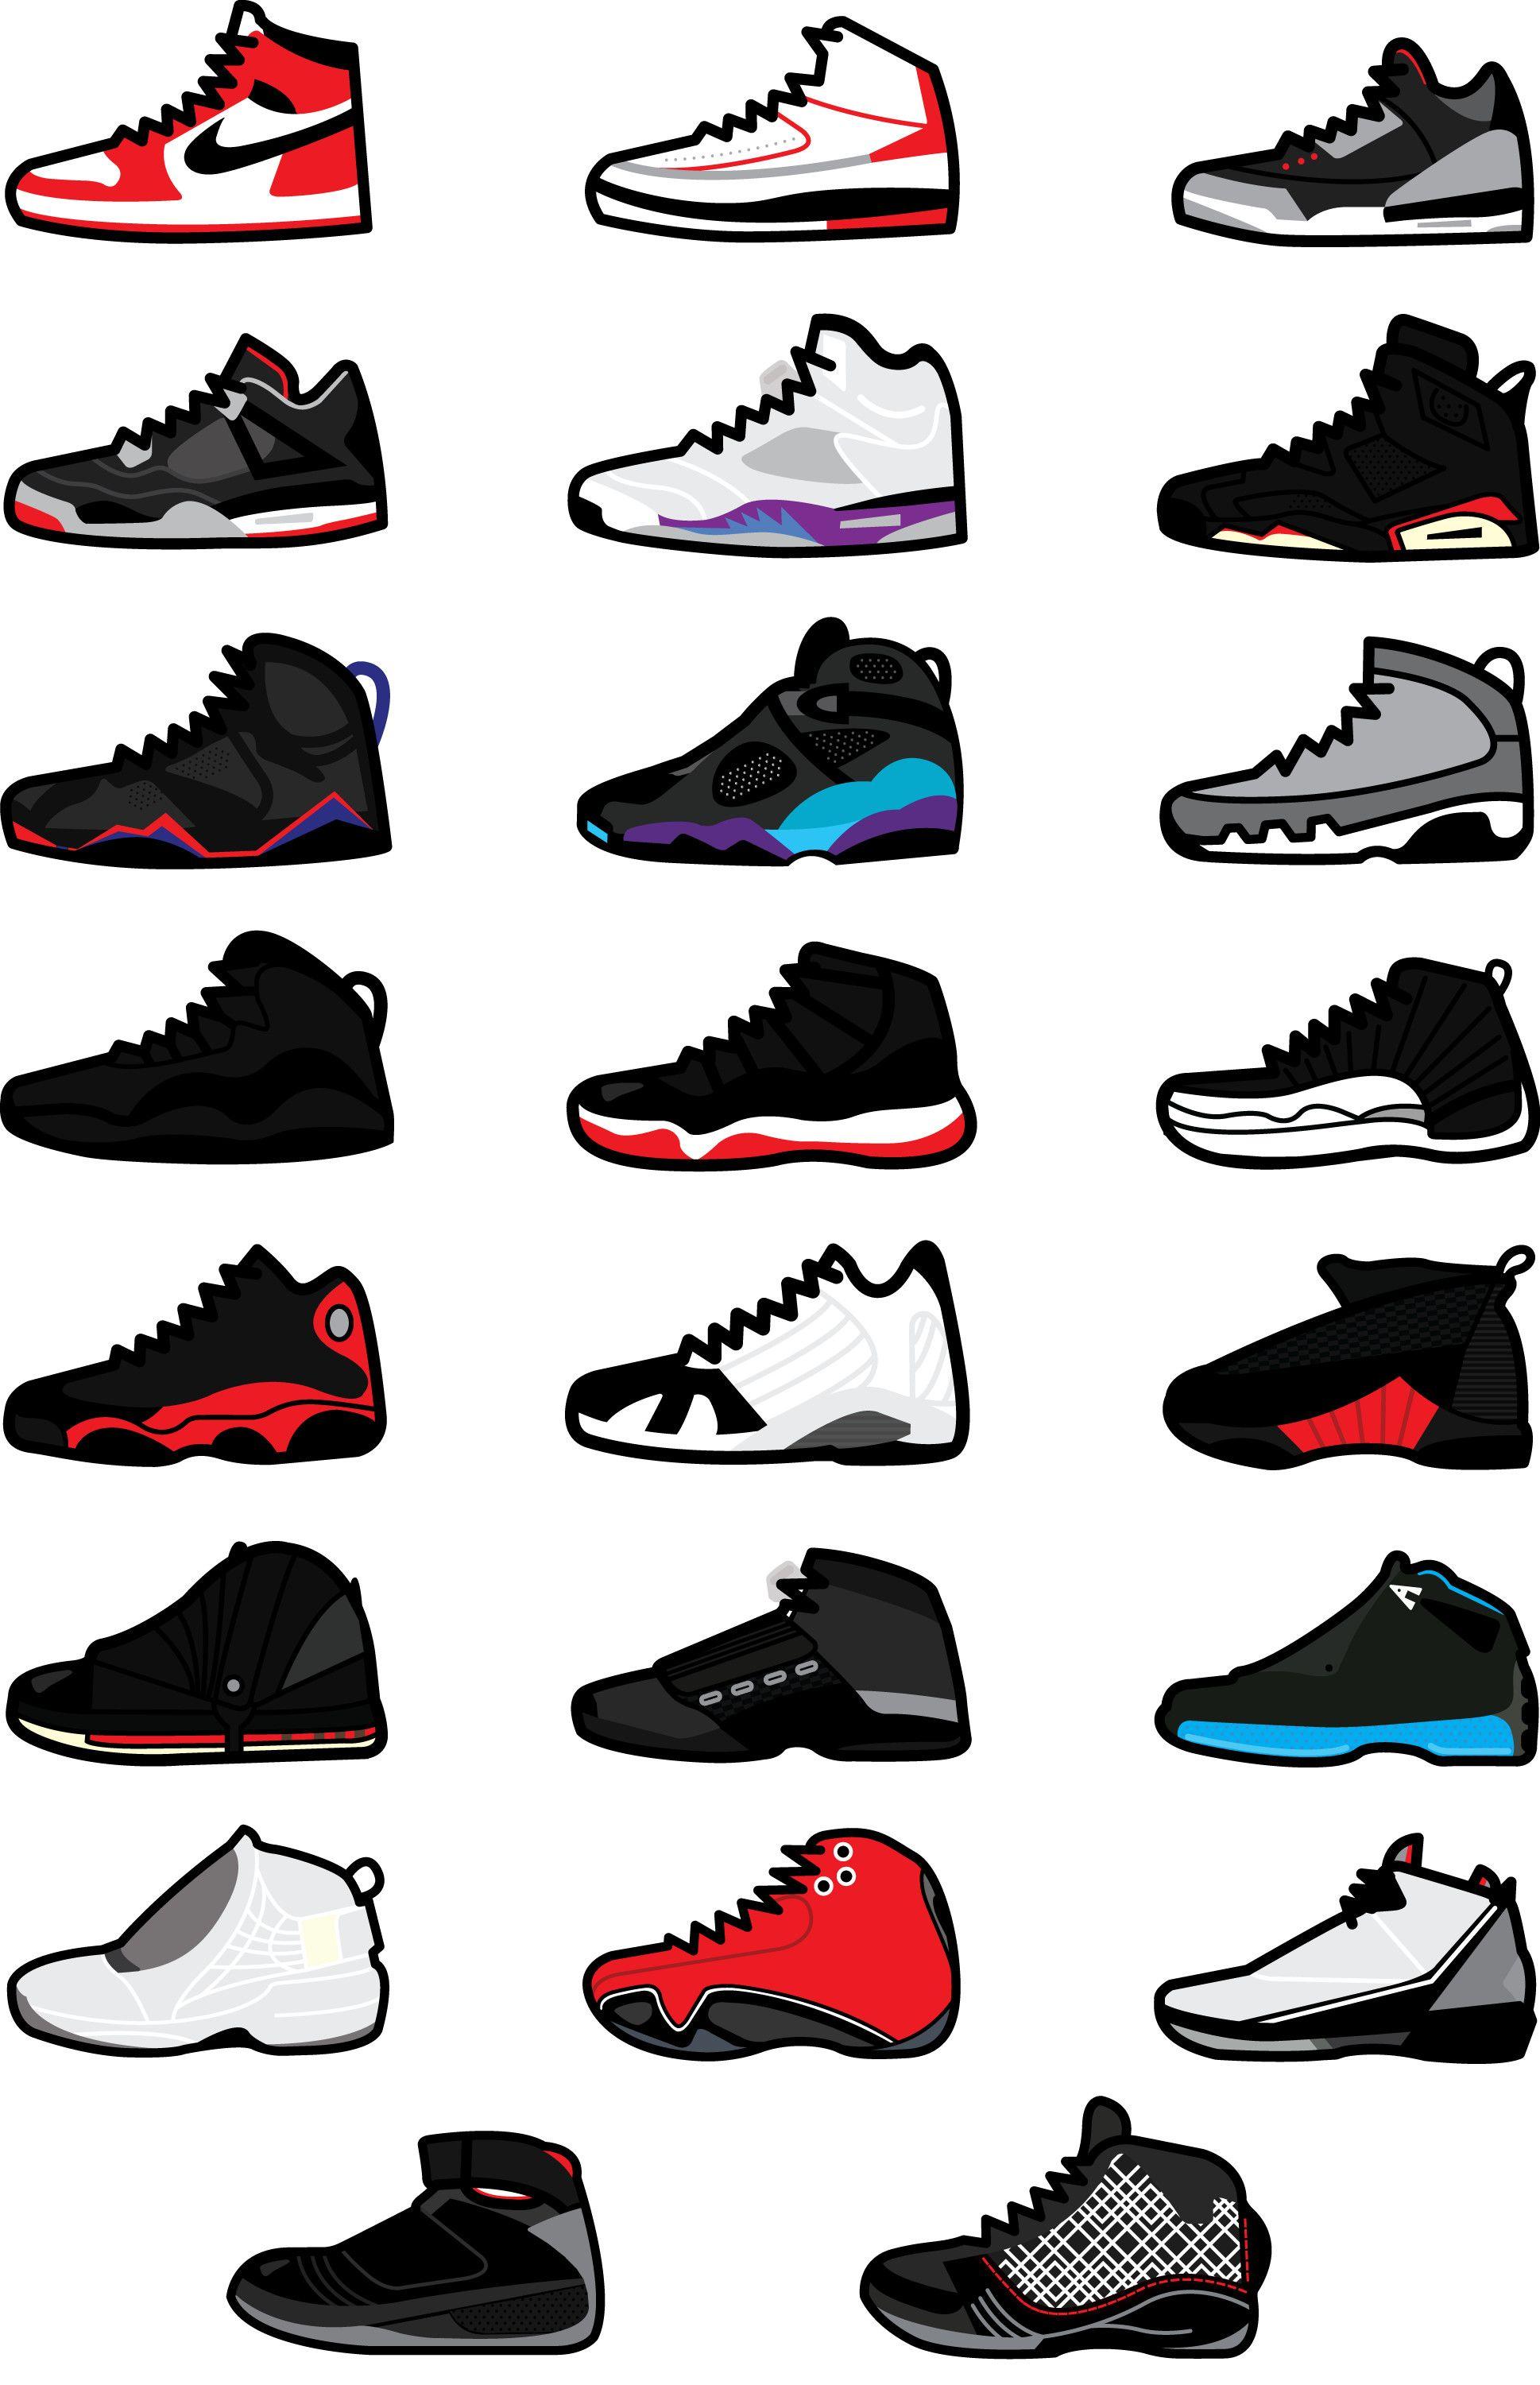 280 Best Sneakers wallpaper ideas | sneakers wallpaper, sneaker art, nike  wallpaper